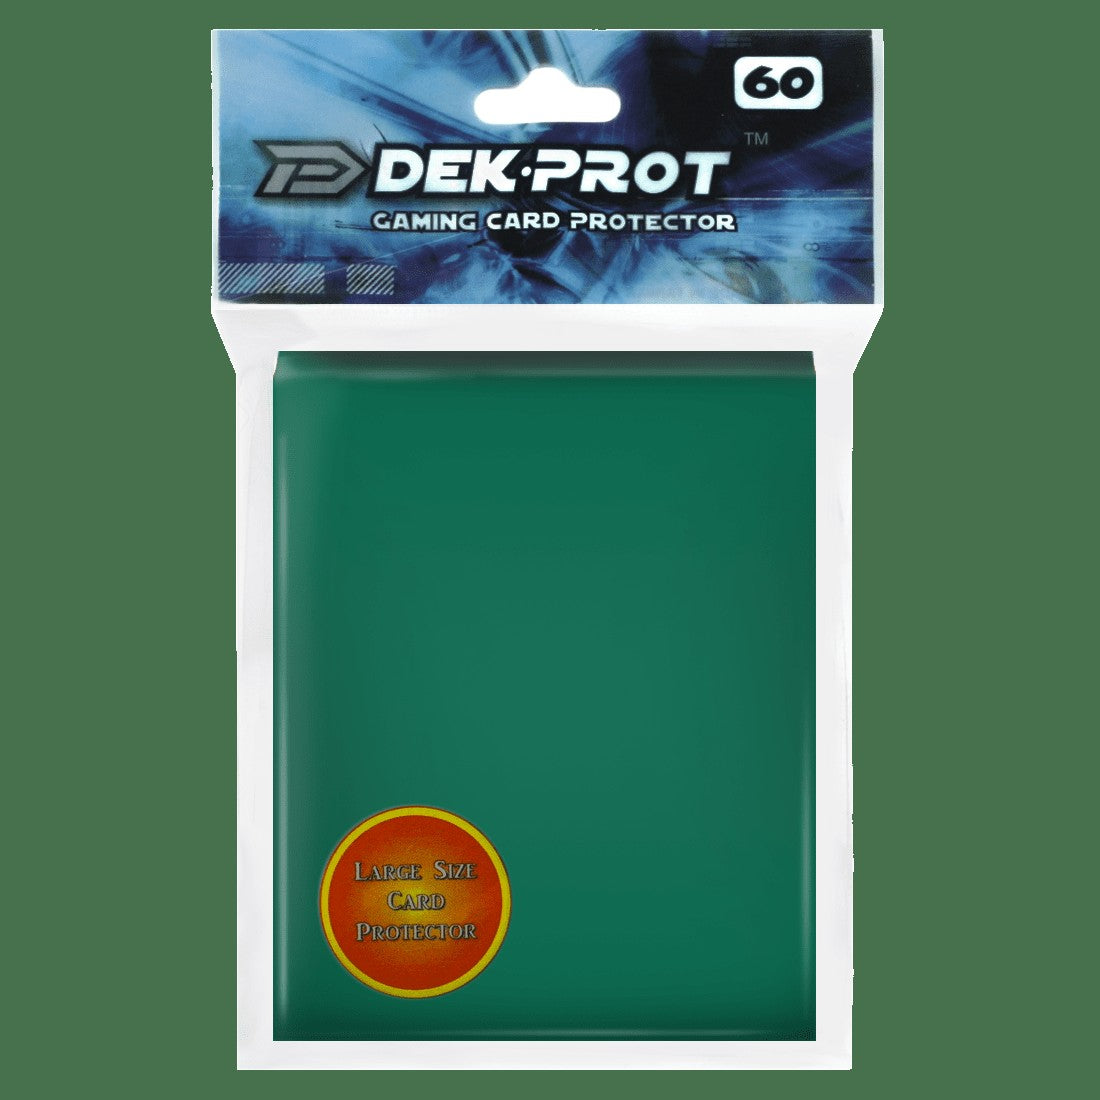 Dek Prot Standard Sized Card Sleeves - Ivy Green (60 Card Sleeves)